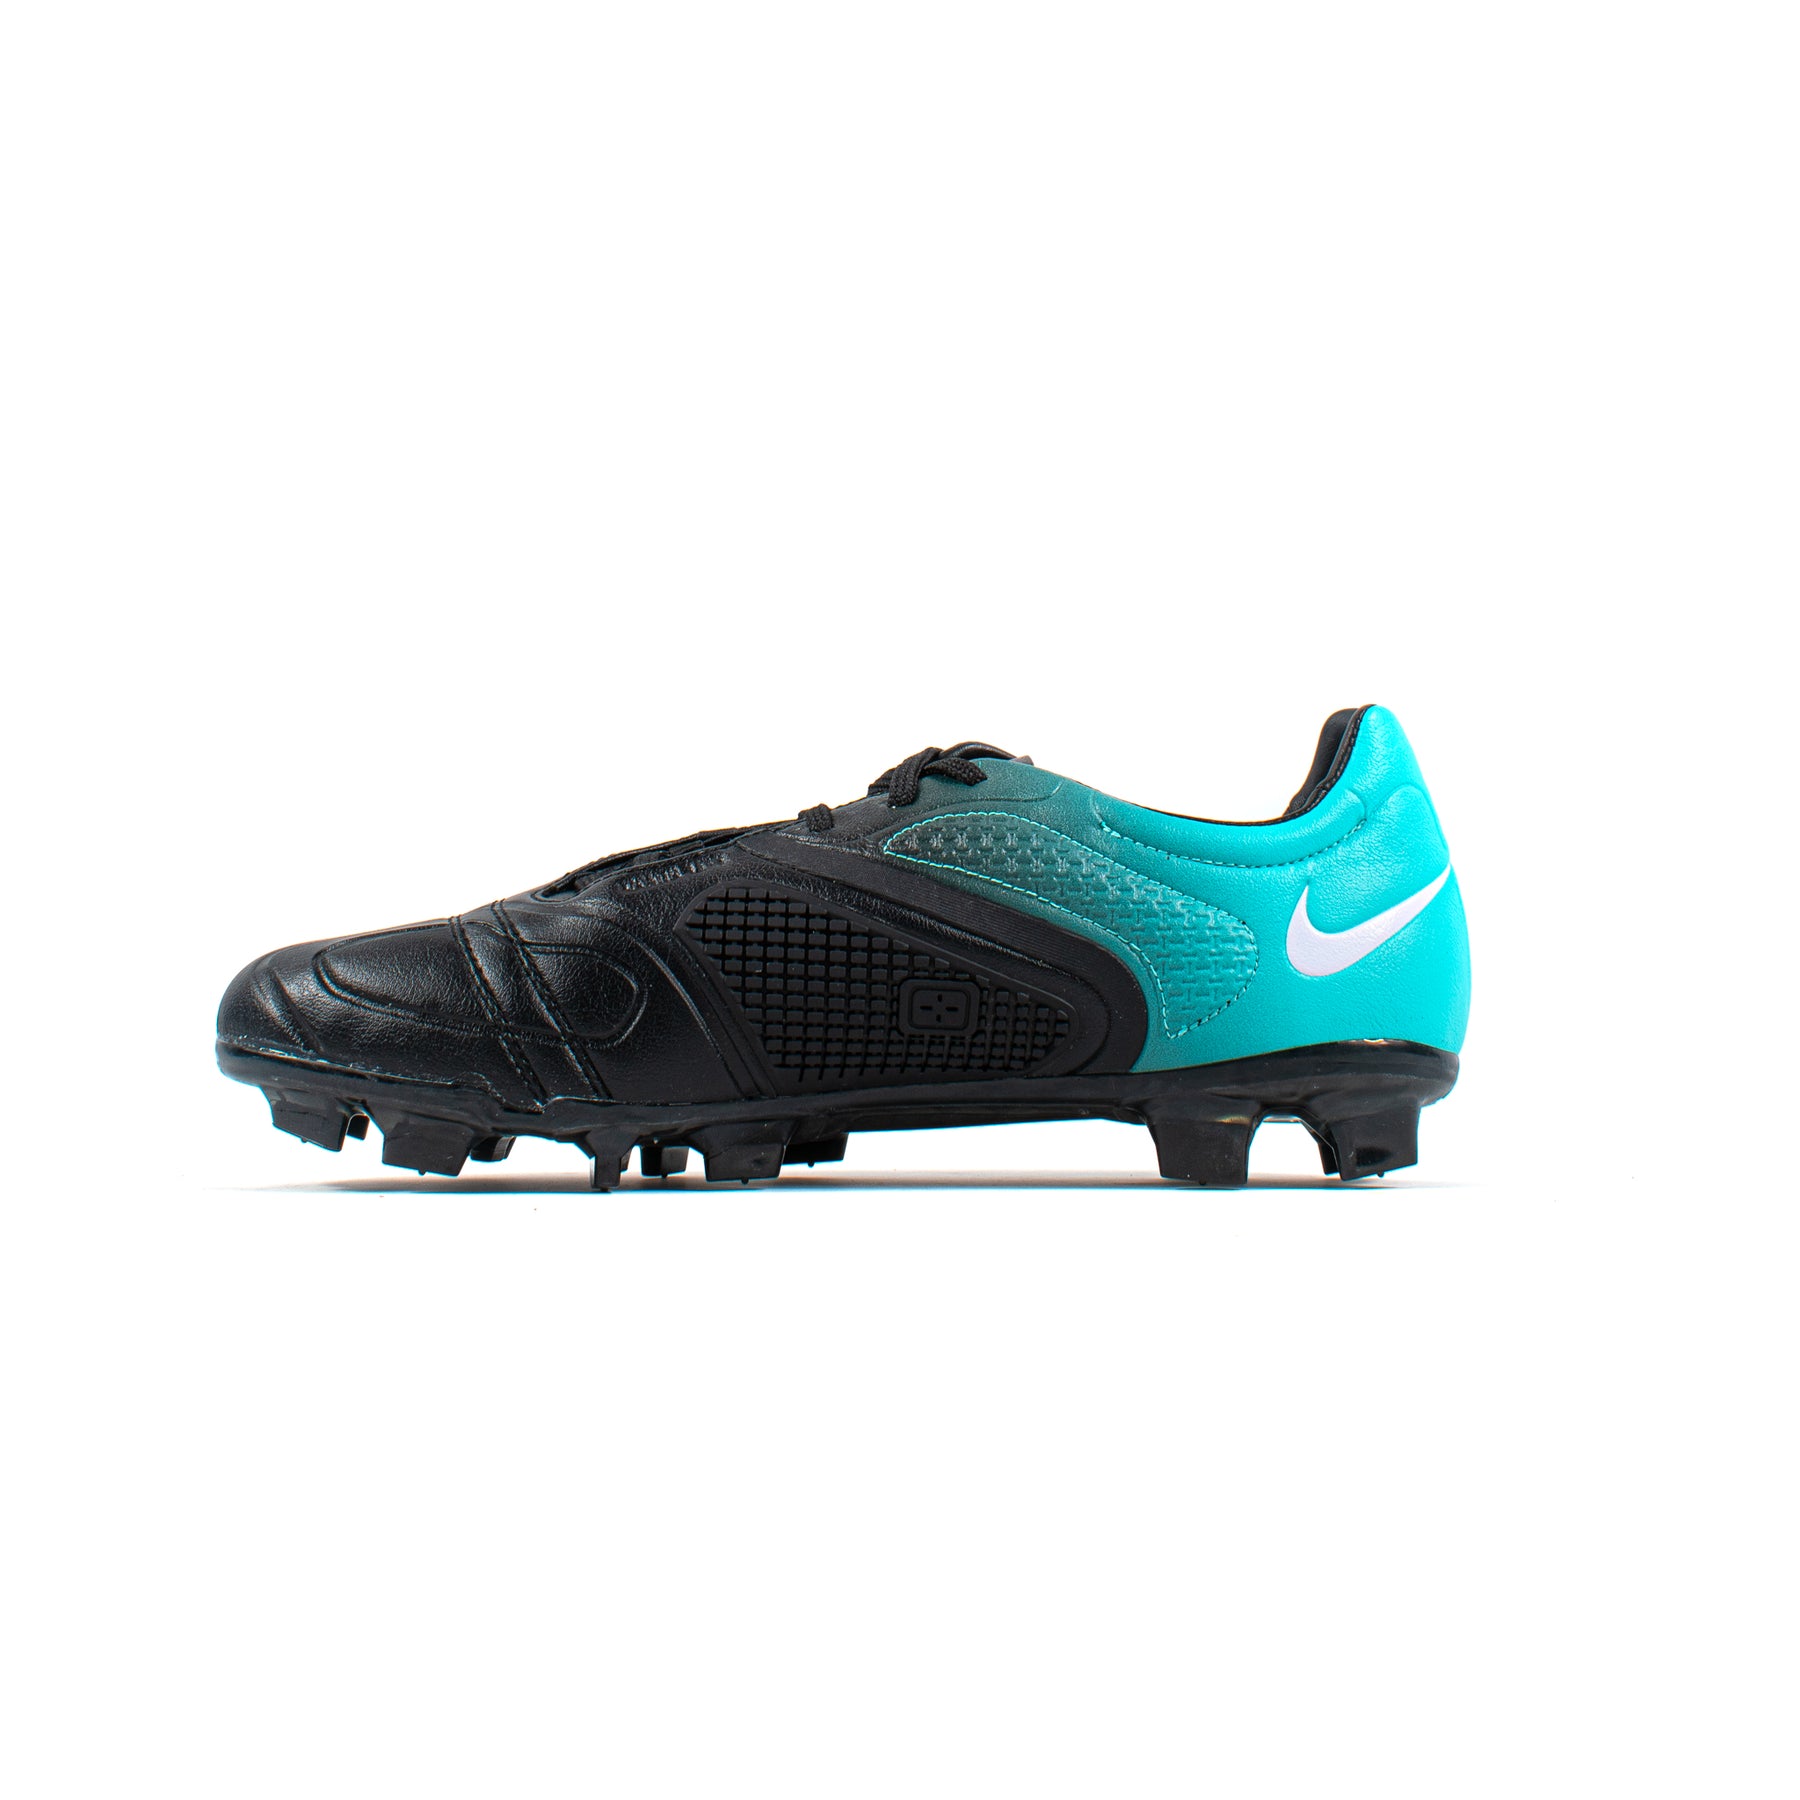 Nike CTR360 Maestri FG – Classic Soccer